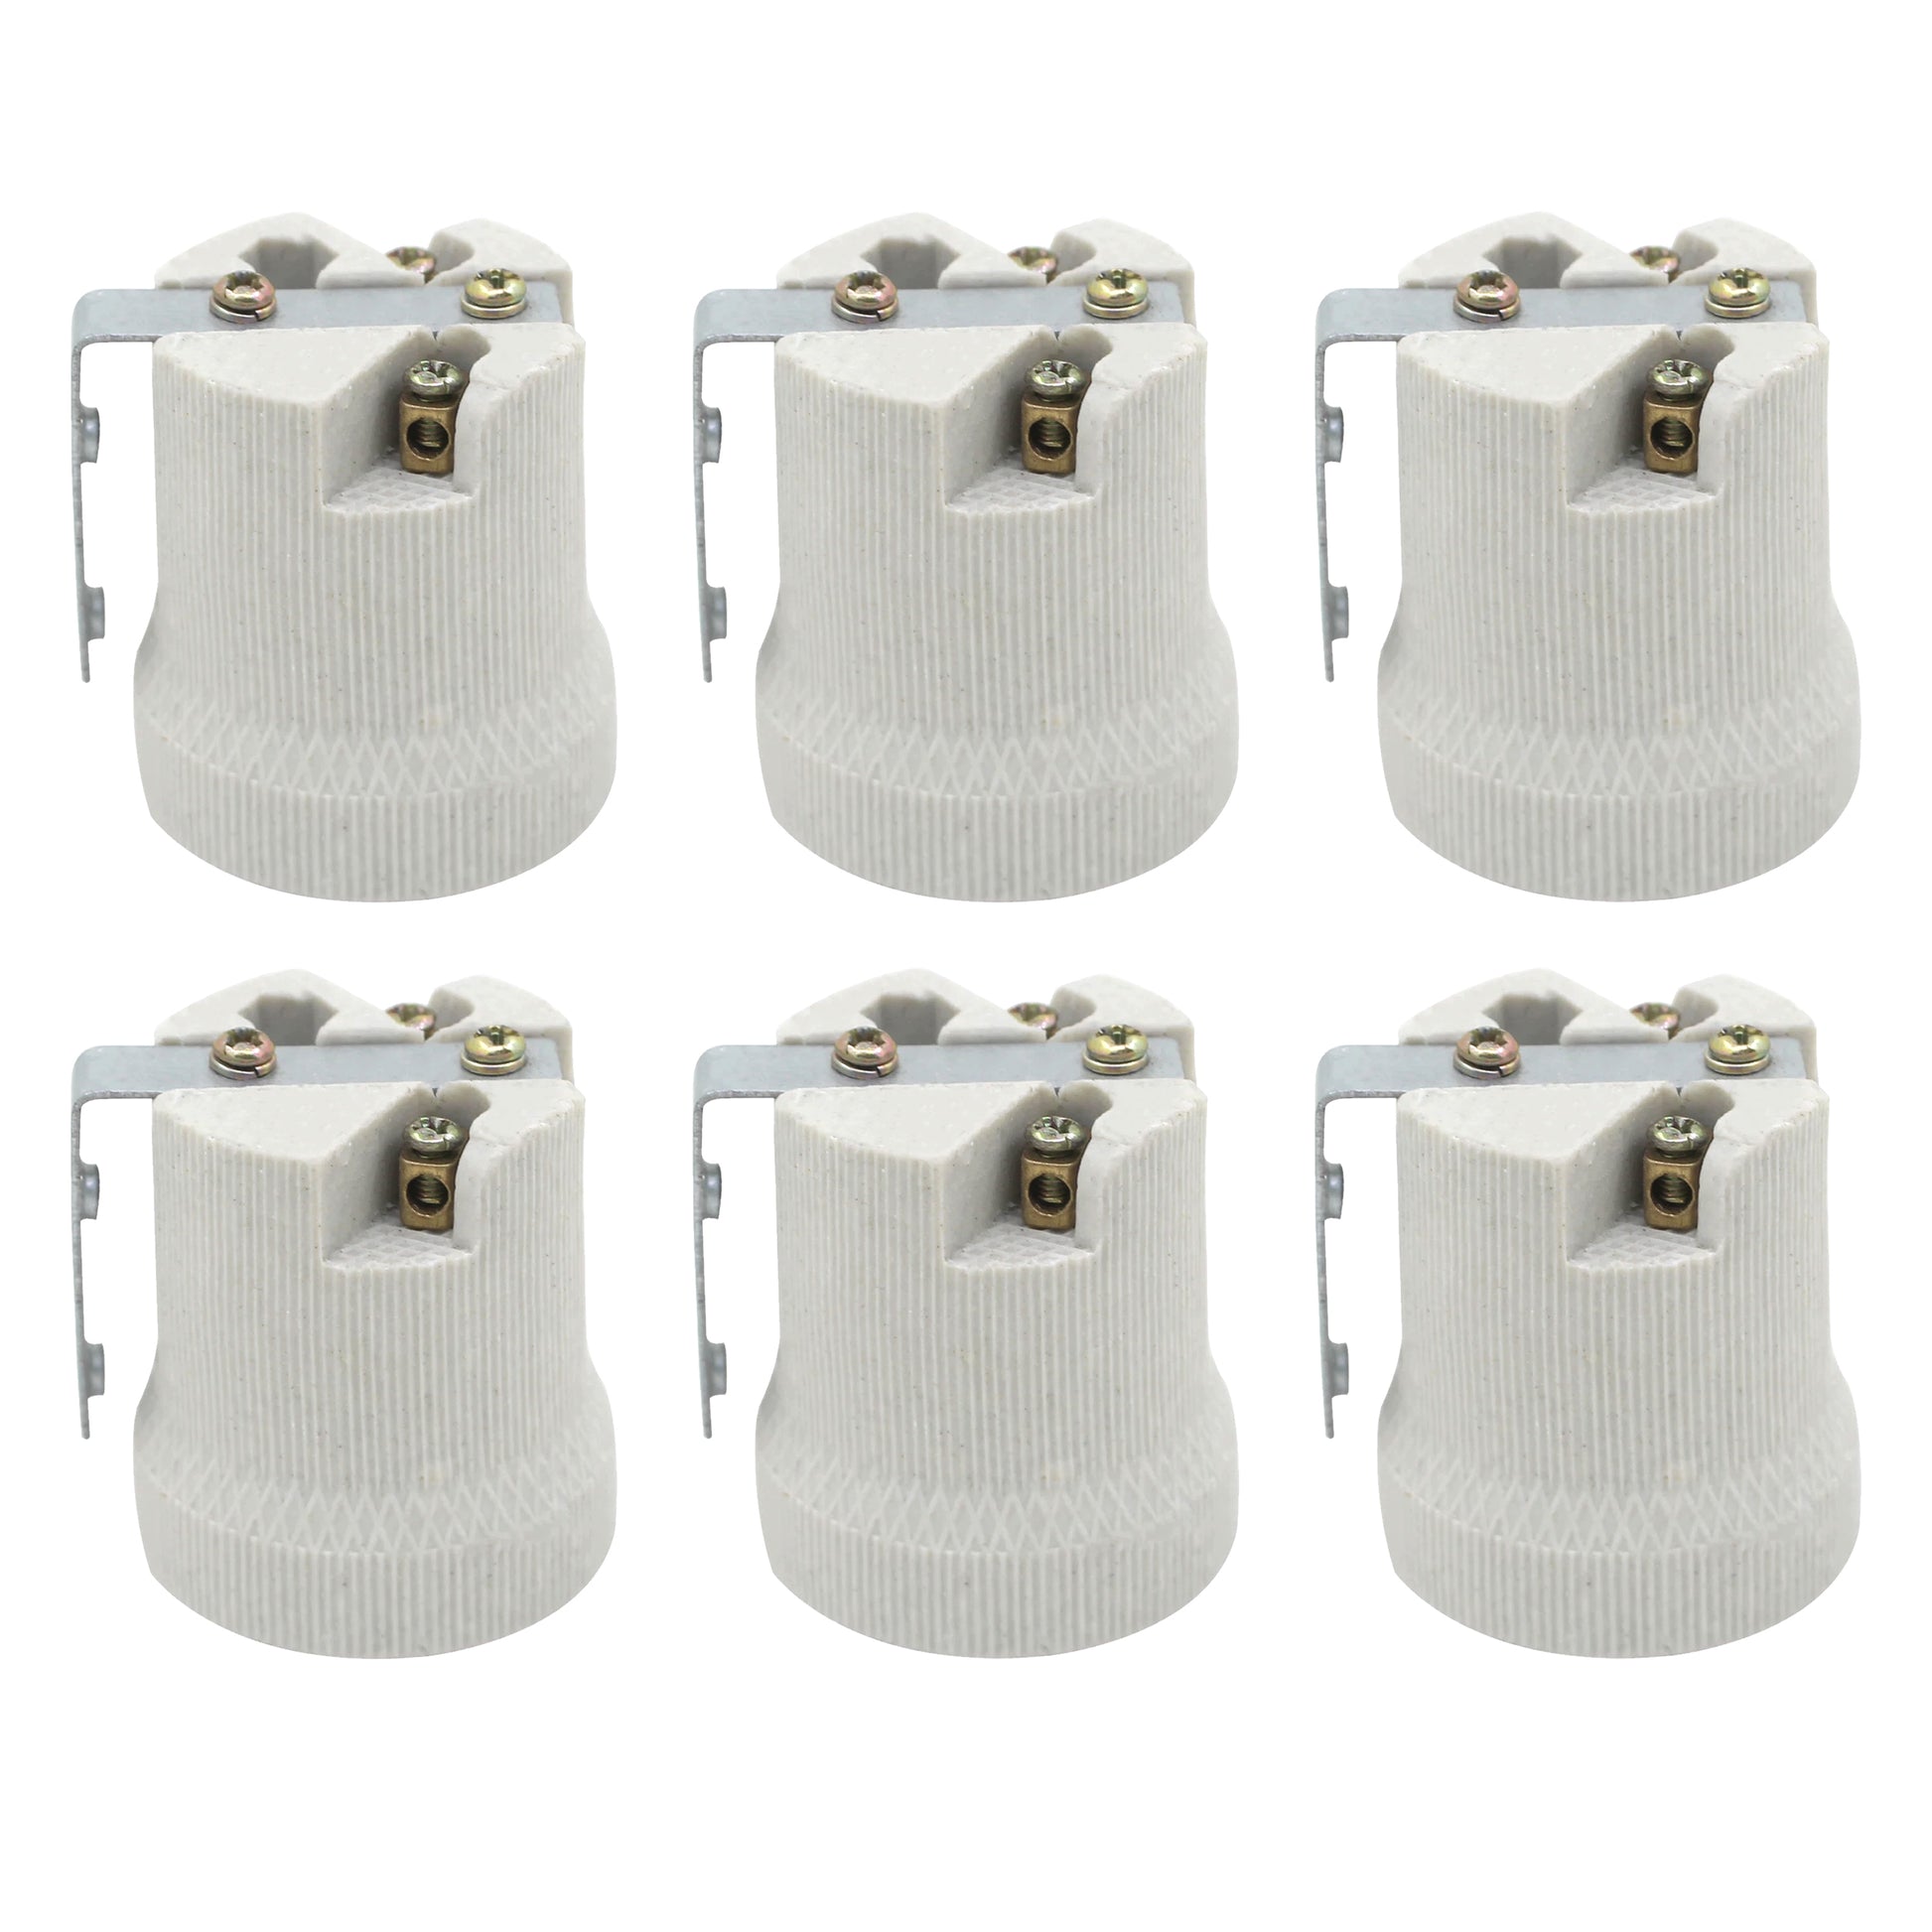 Ceramic Heat bulb holder in 5 packs